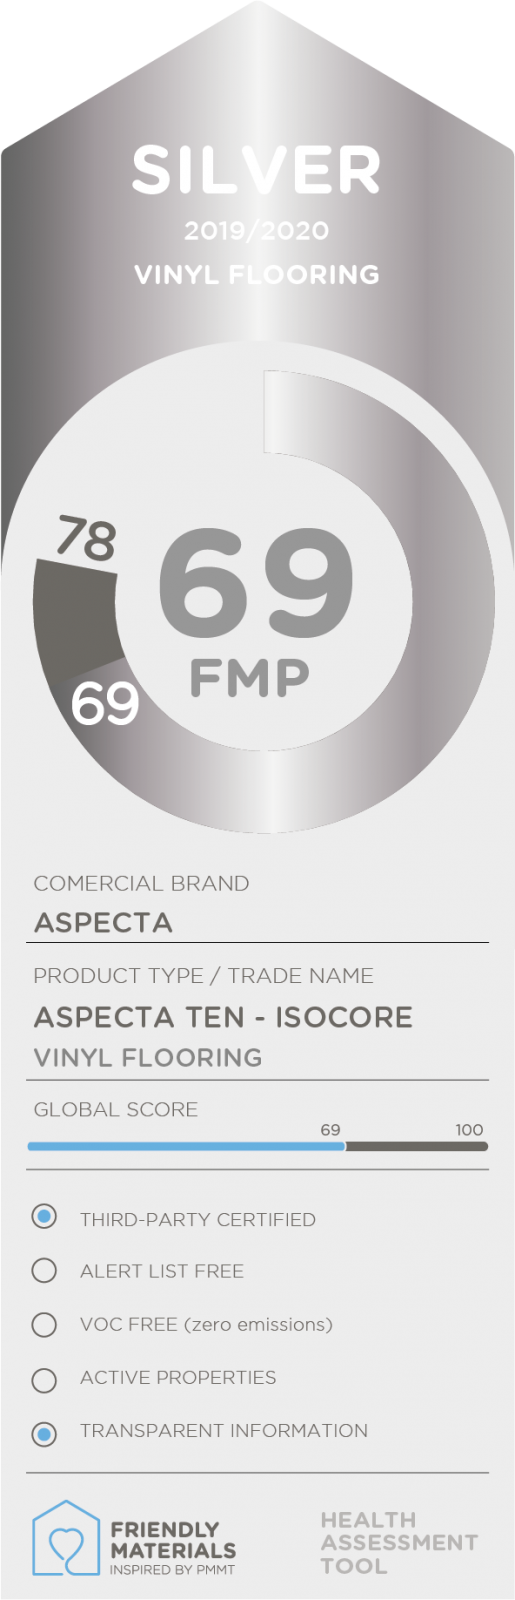 Aspecta Ten - Isocore silver 69